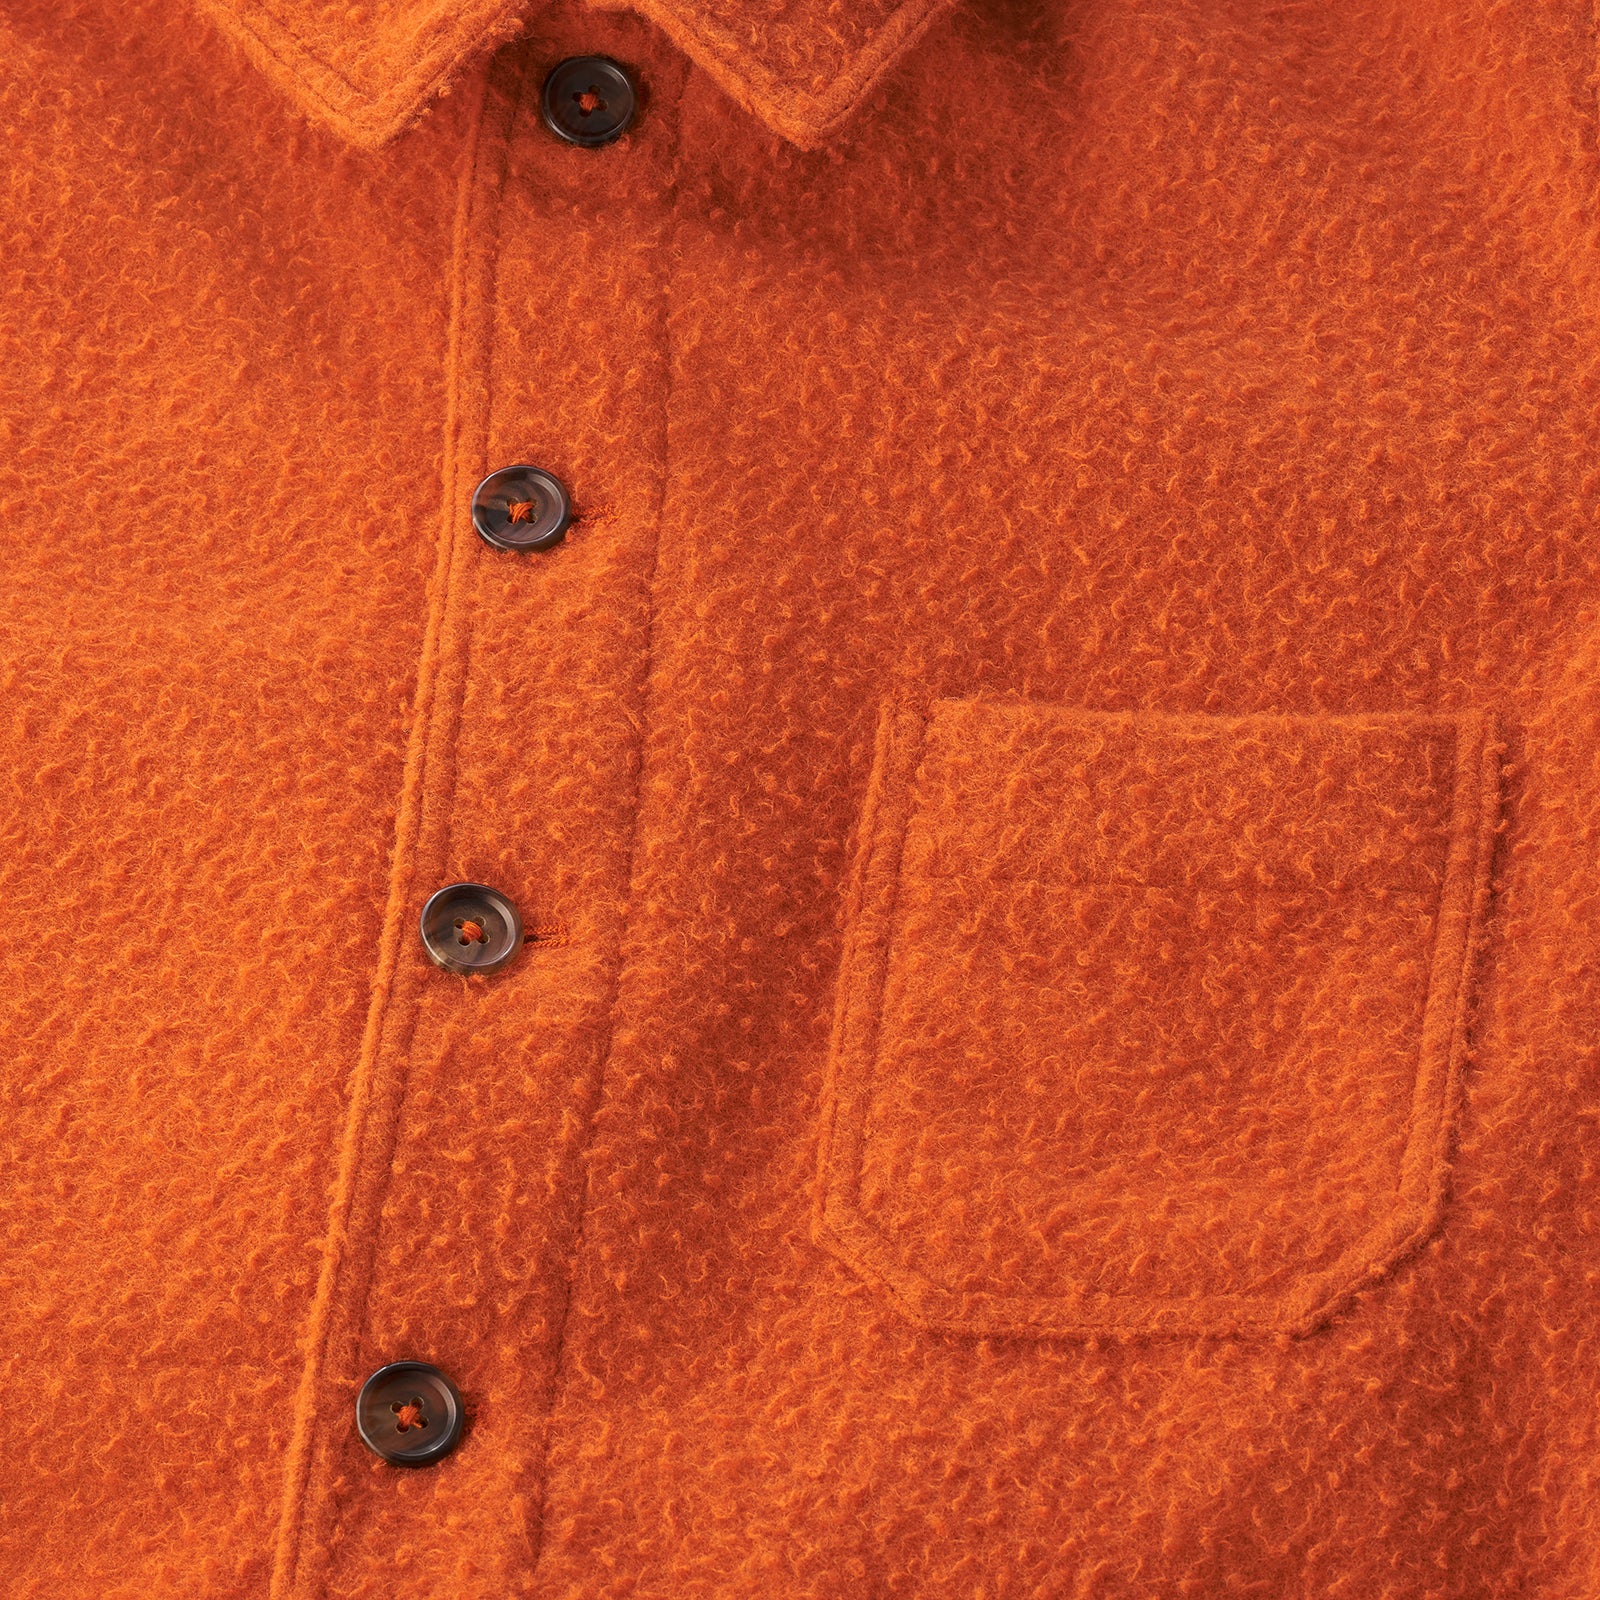 Tuscan Orange Casentino Utility Jacket